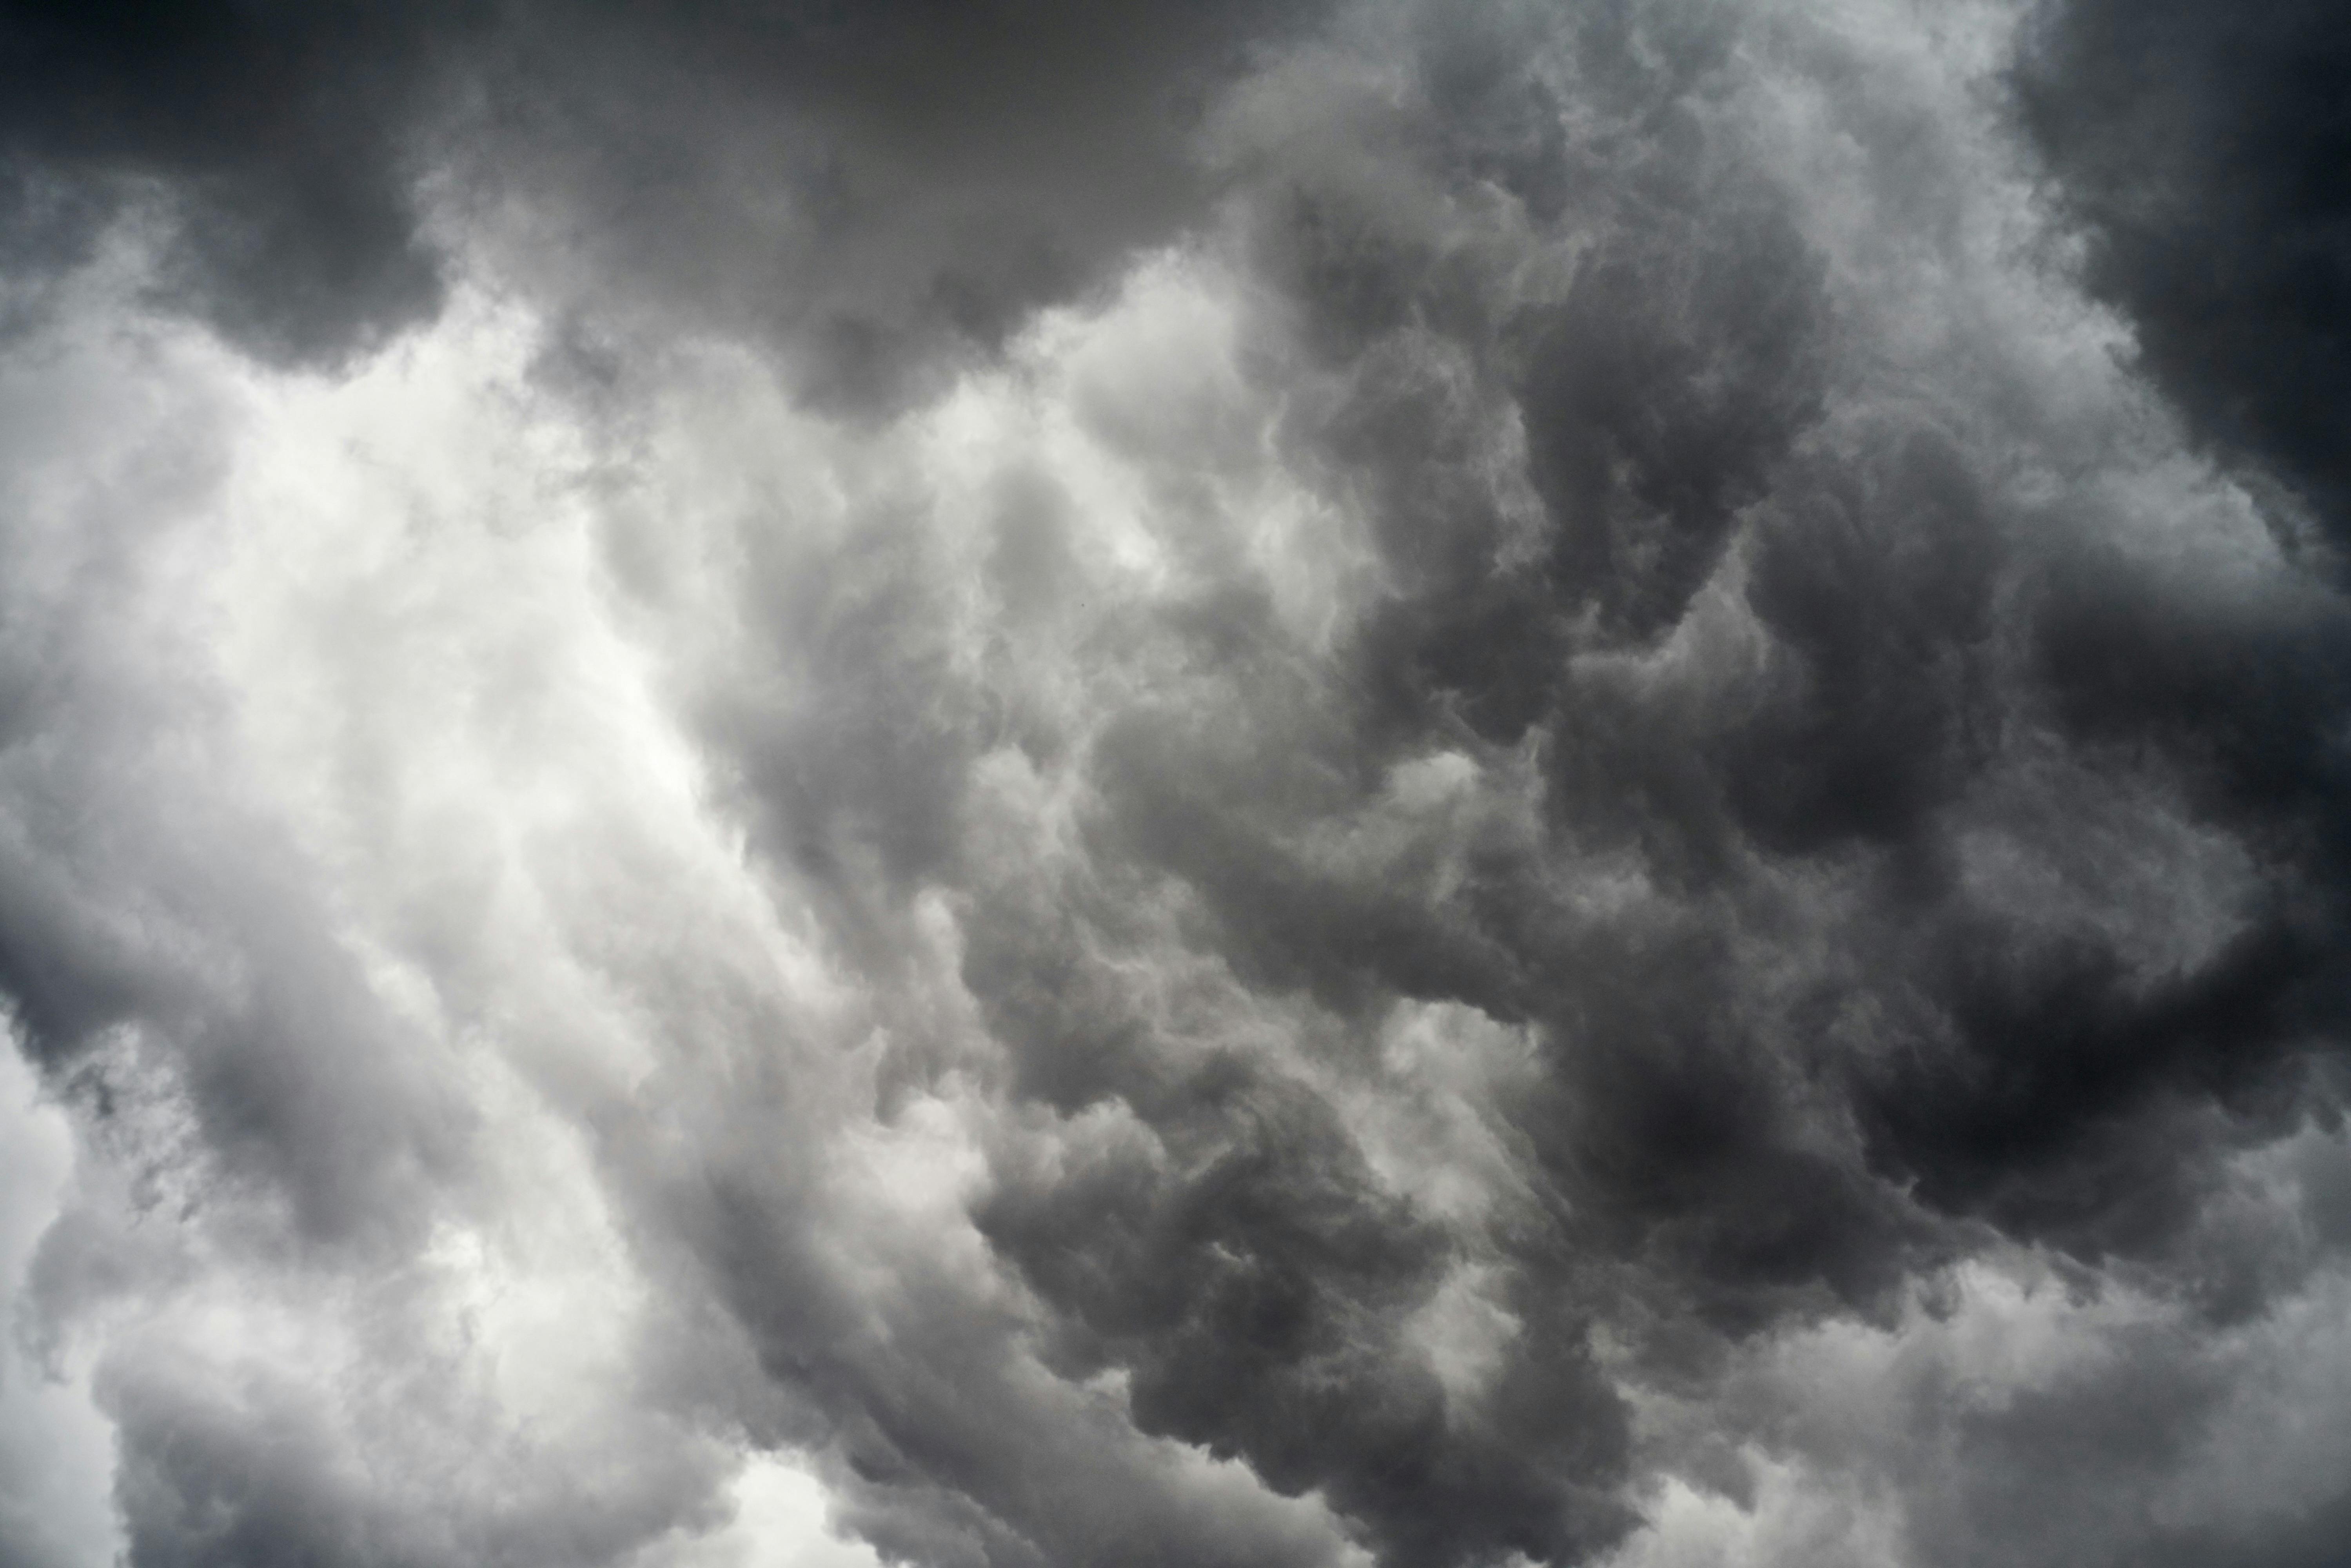 dunkle-wolken-foto-bild-wolken-meer-regen-bilder-auf-fotocommunity